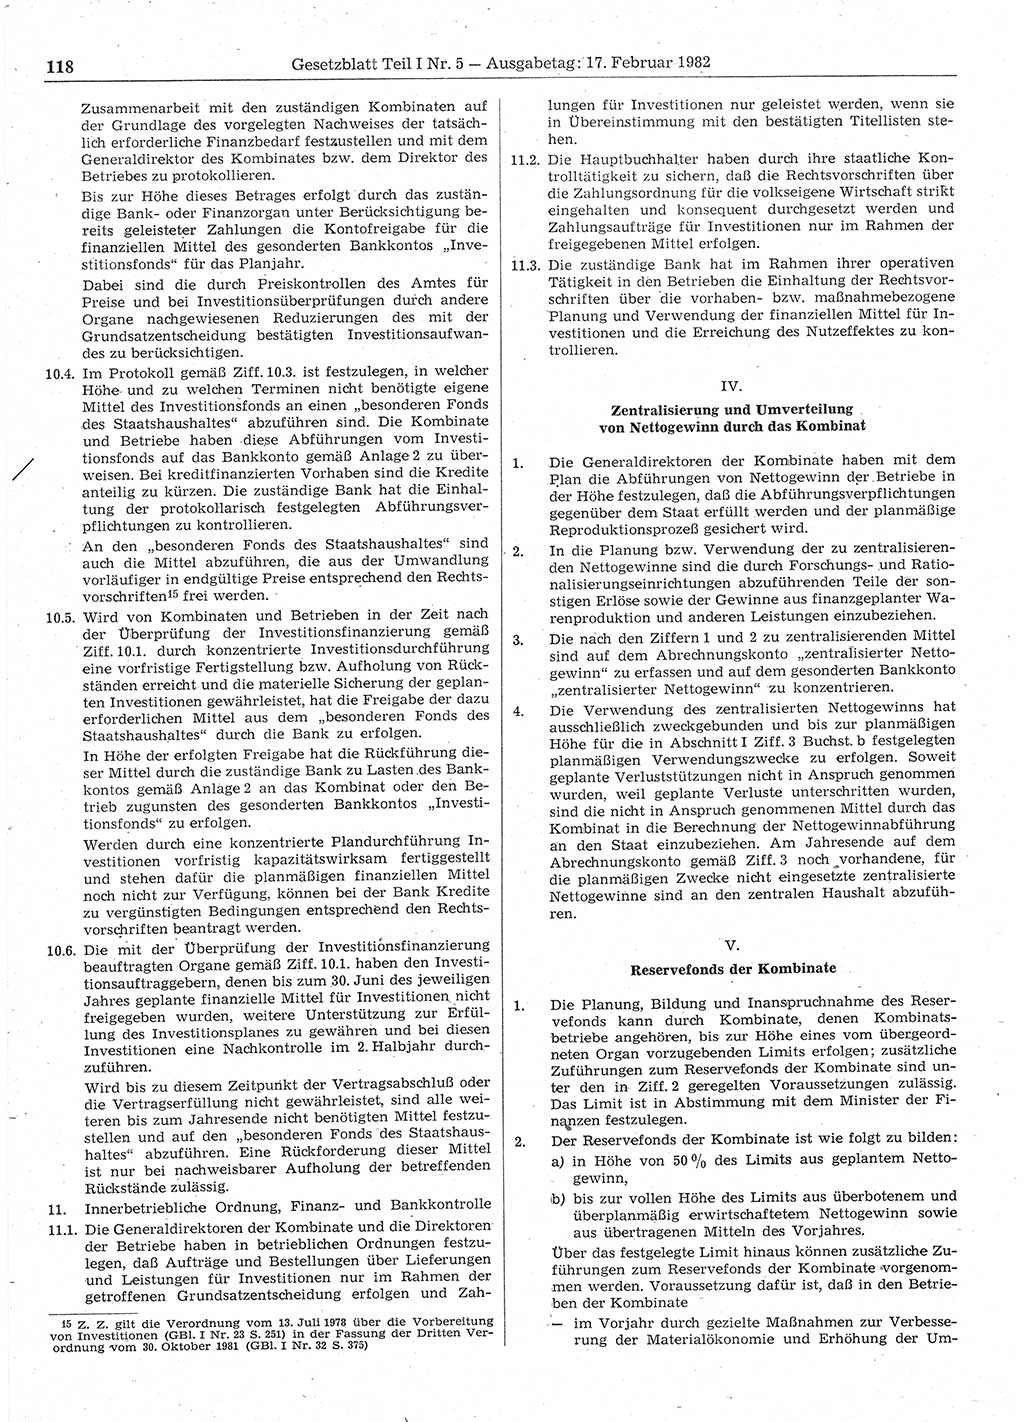 Gesetzblatt (GBl.) der Deutschen Demokratischen Republik (DDR) Teil Ⅰ 1982, Seite 118 (GBl. DDR Ⅰ 1982, S. 118)